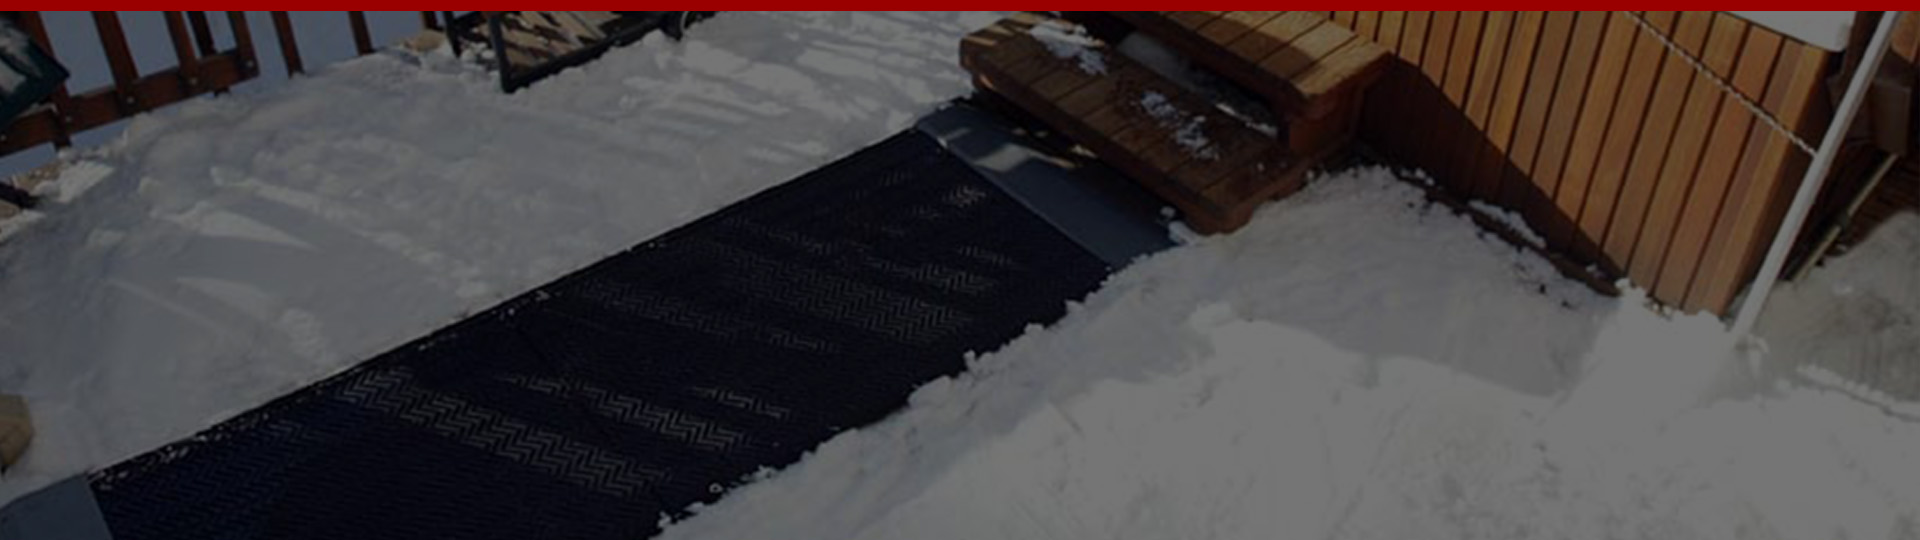 https://www.snow-mats.com/media/image/snow-mats-warmtrax-banner-1920.jpg